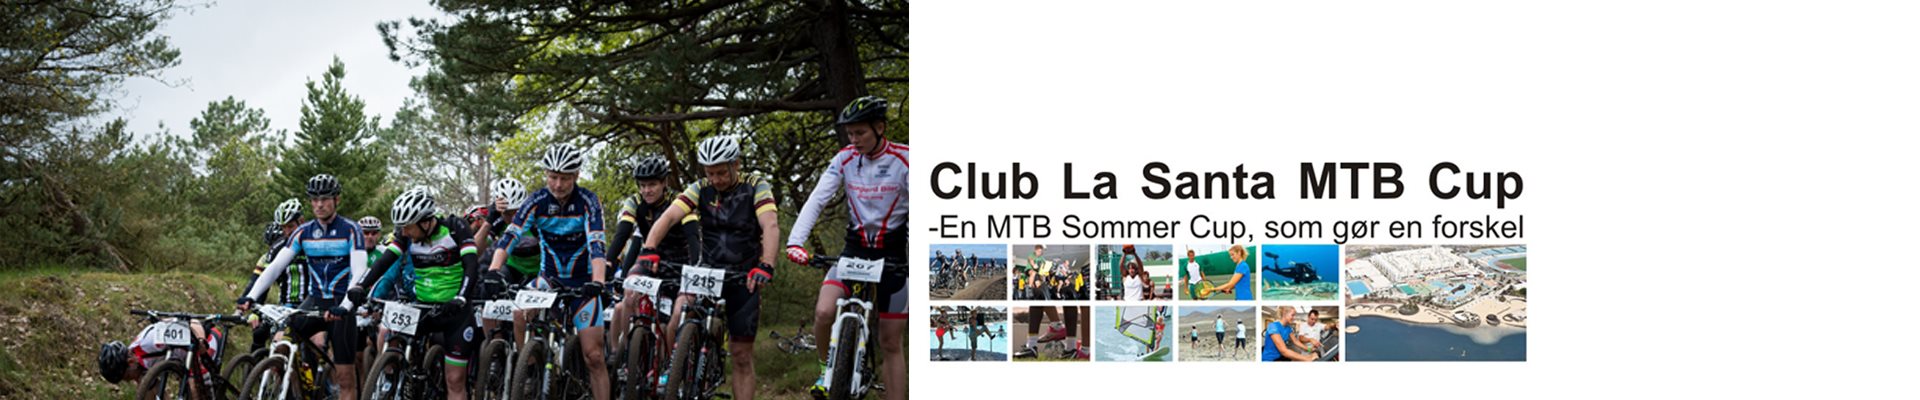 CLUB LA SANTA MTB CUP '19 - Samlet CUP